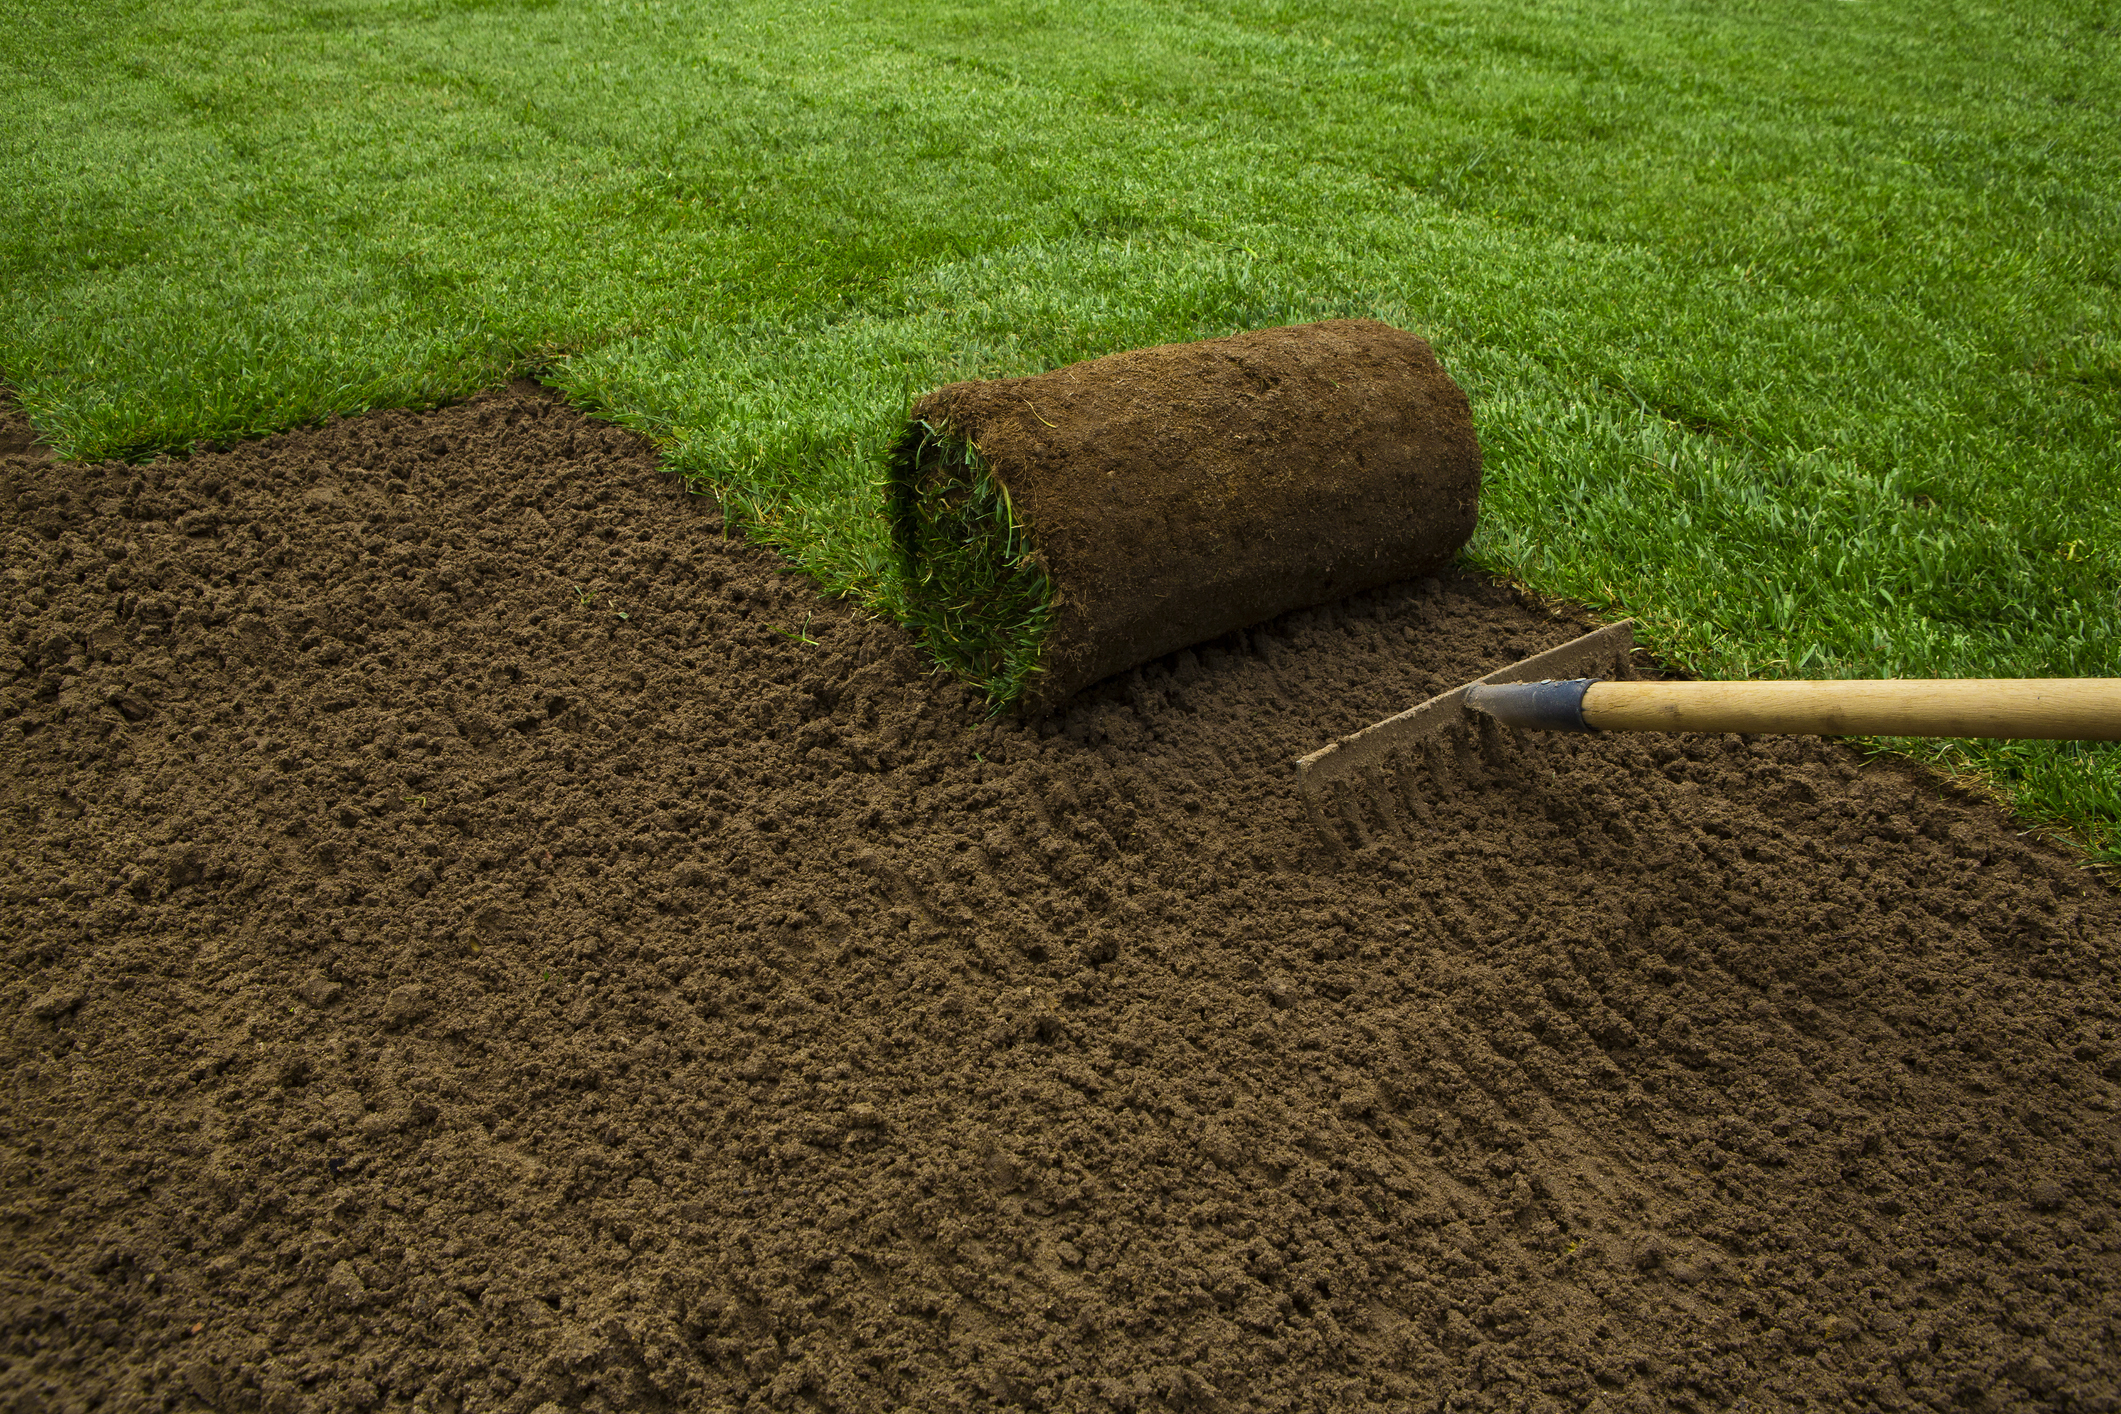 Comment semer de la pelouse ? Un nouveau gazon en 5 étapes